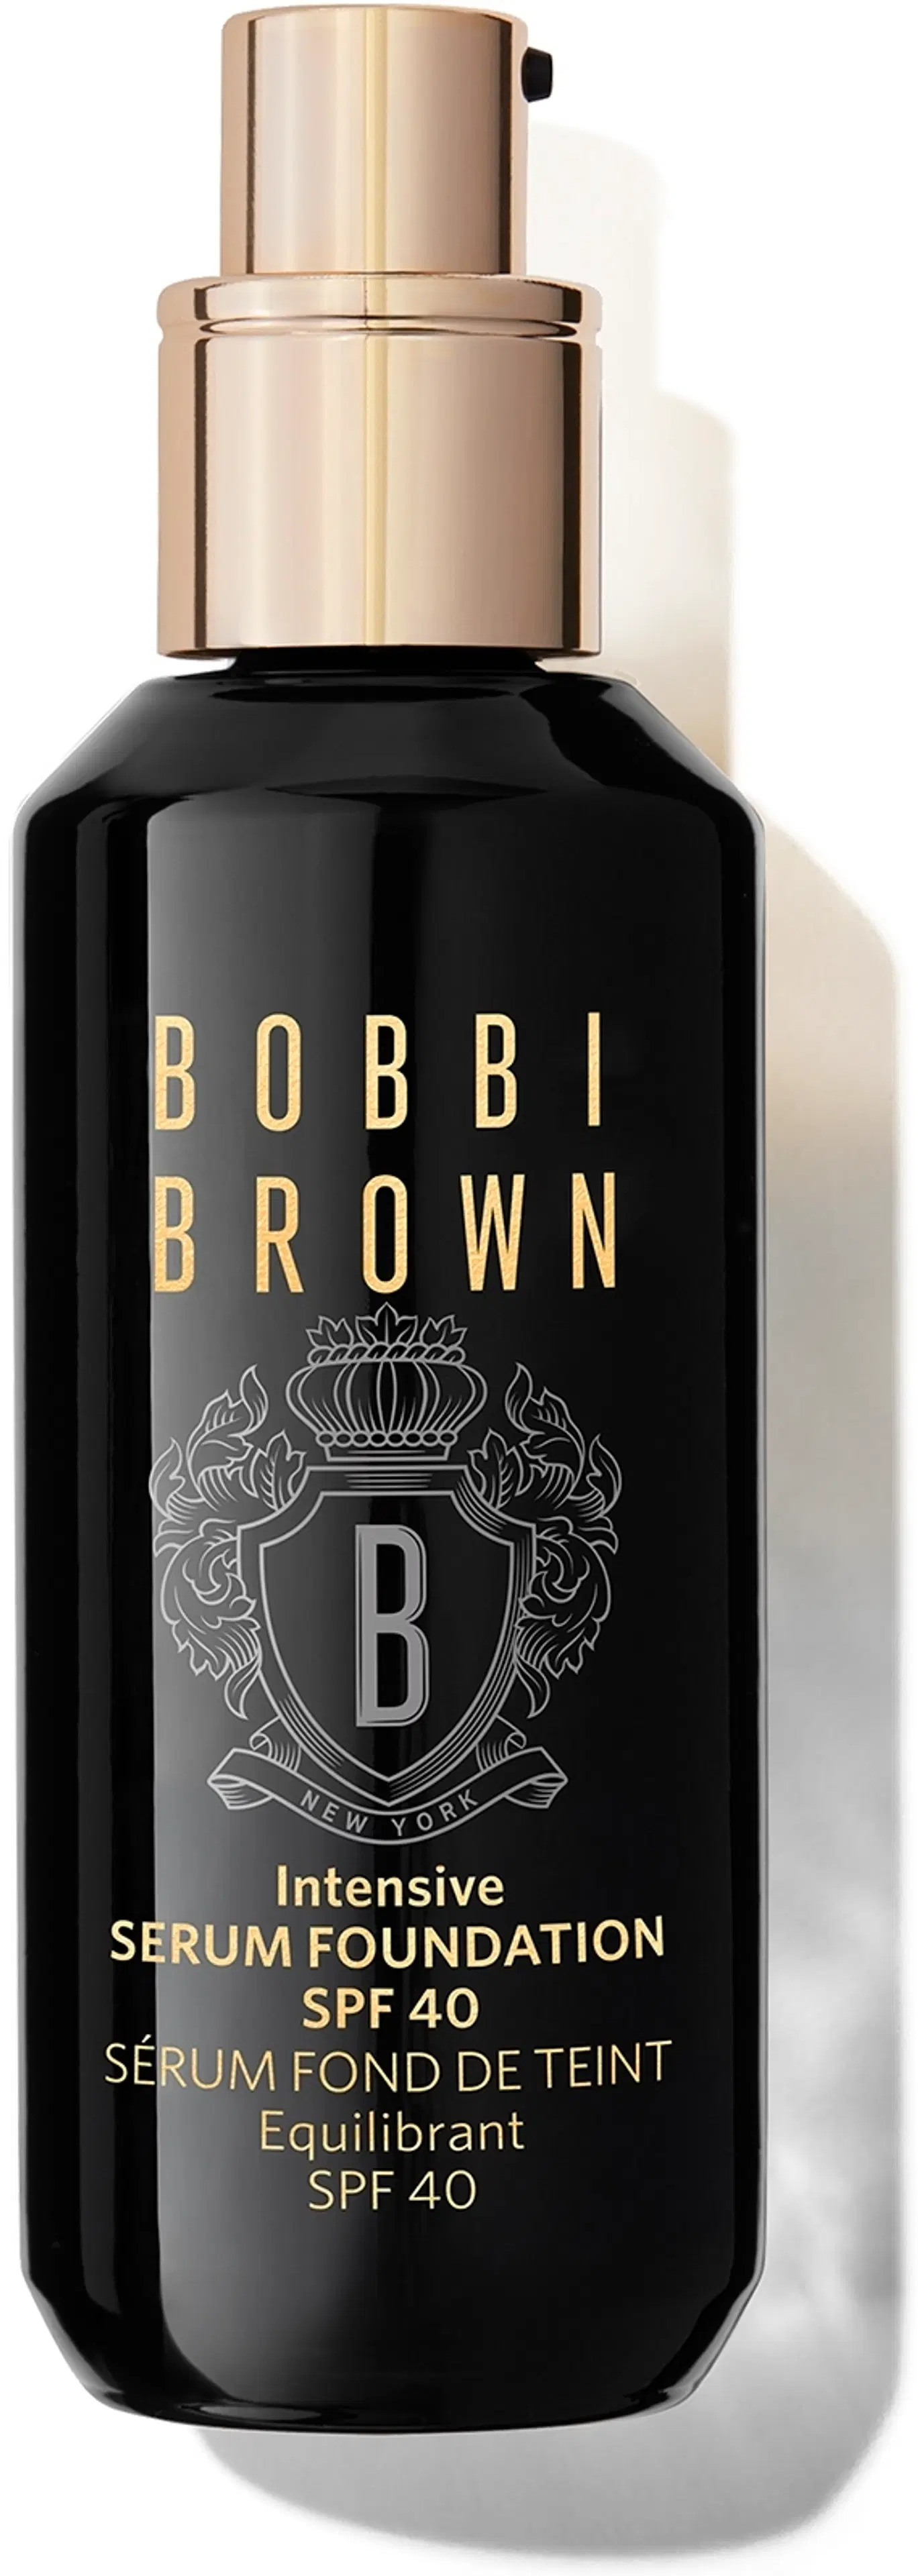 Bobbi Brown Intensive Serum Foundation meikkivoide 30 ml